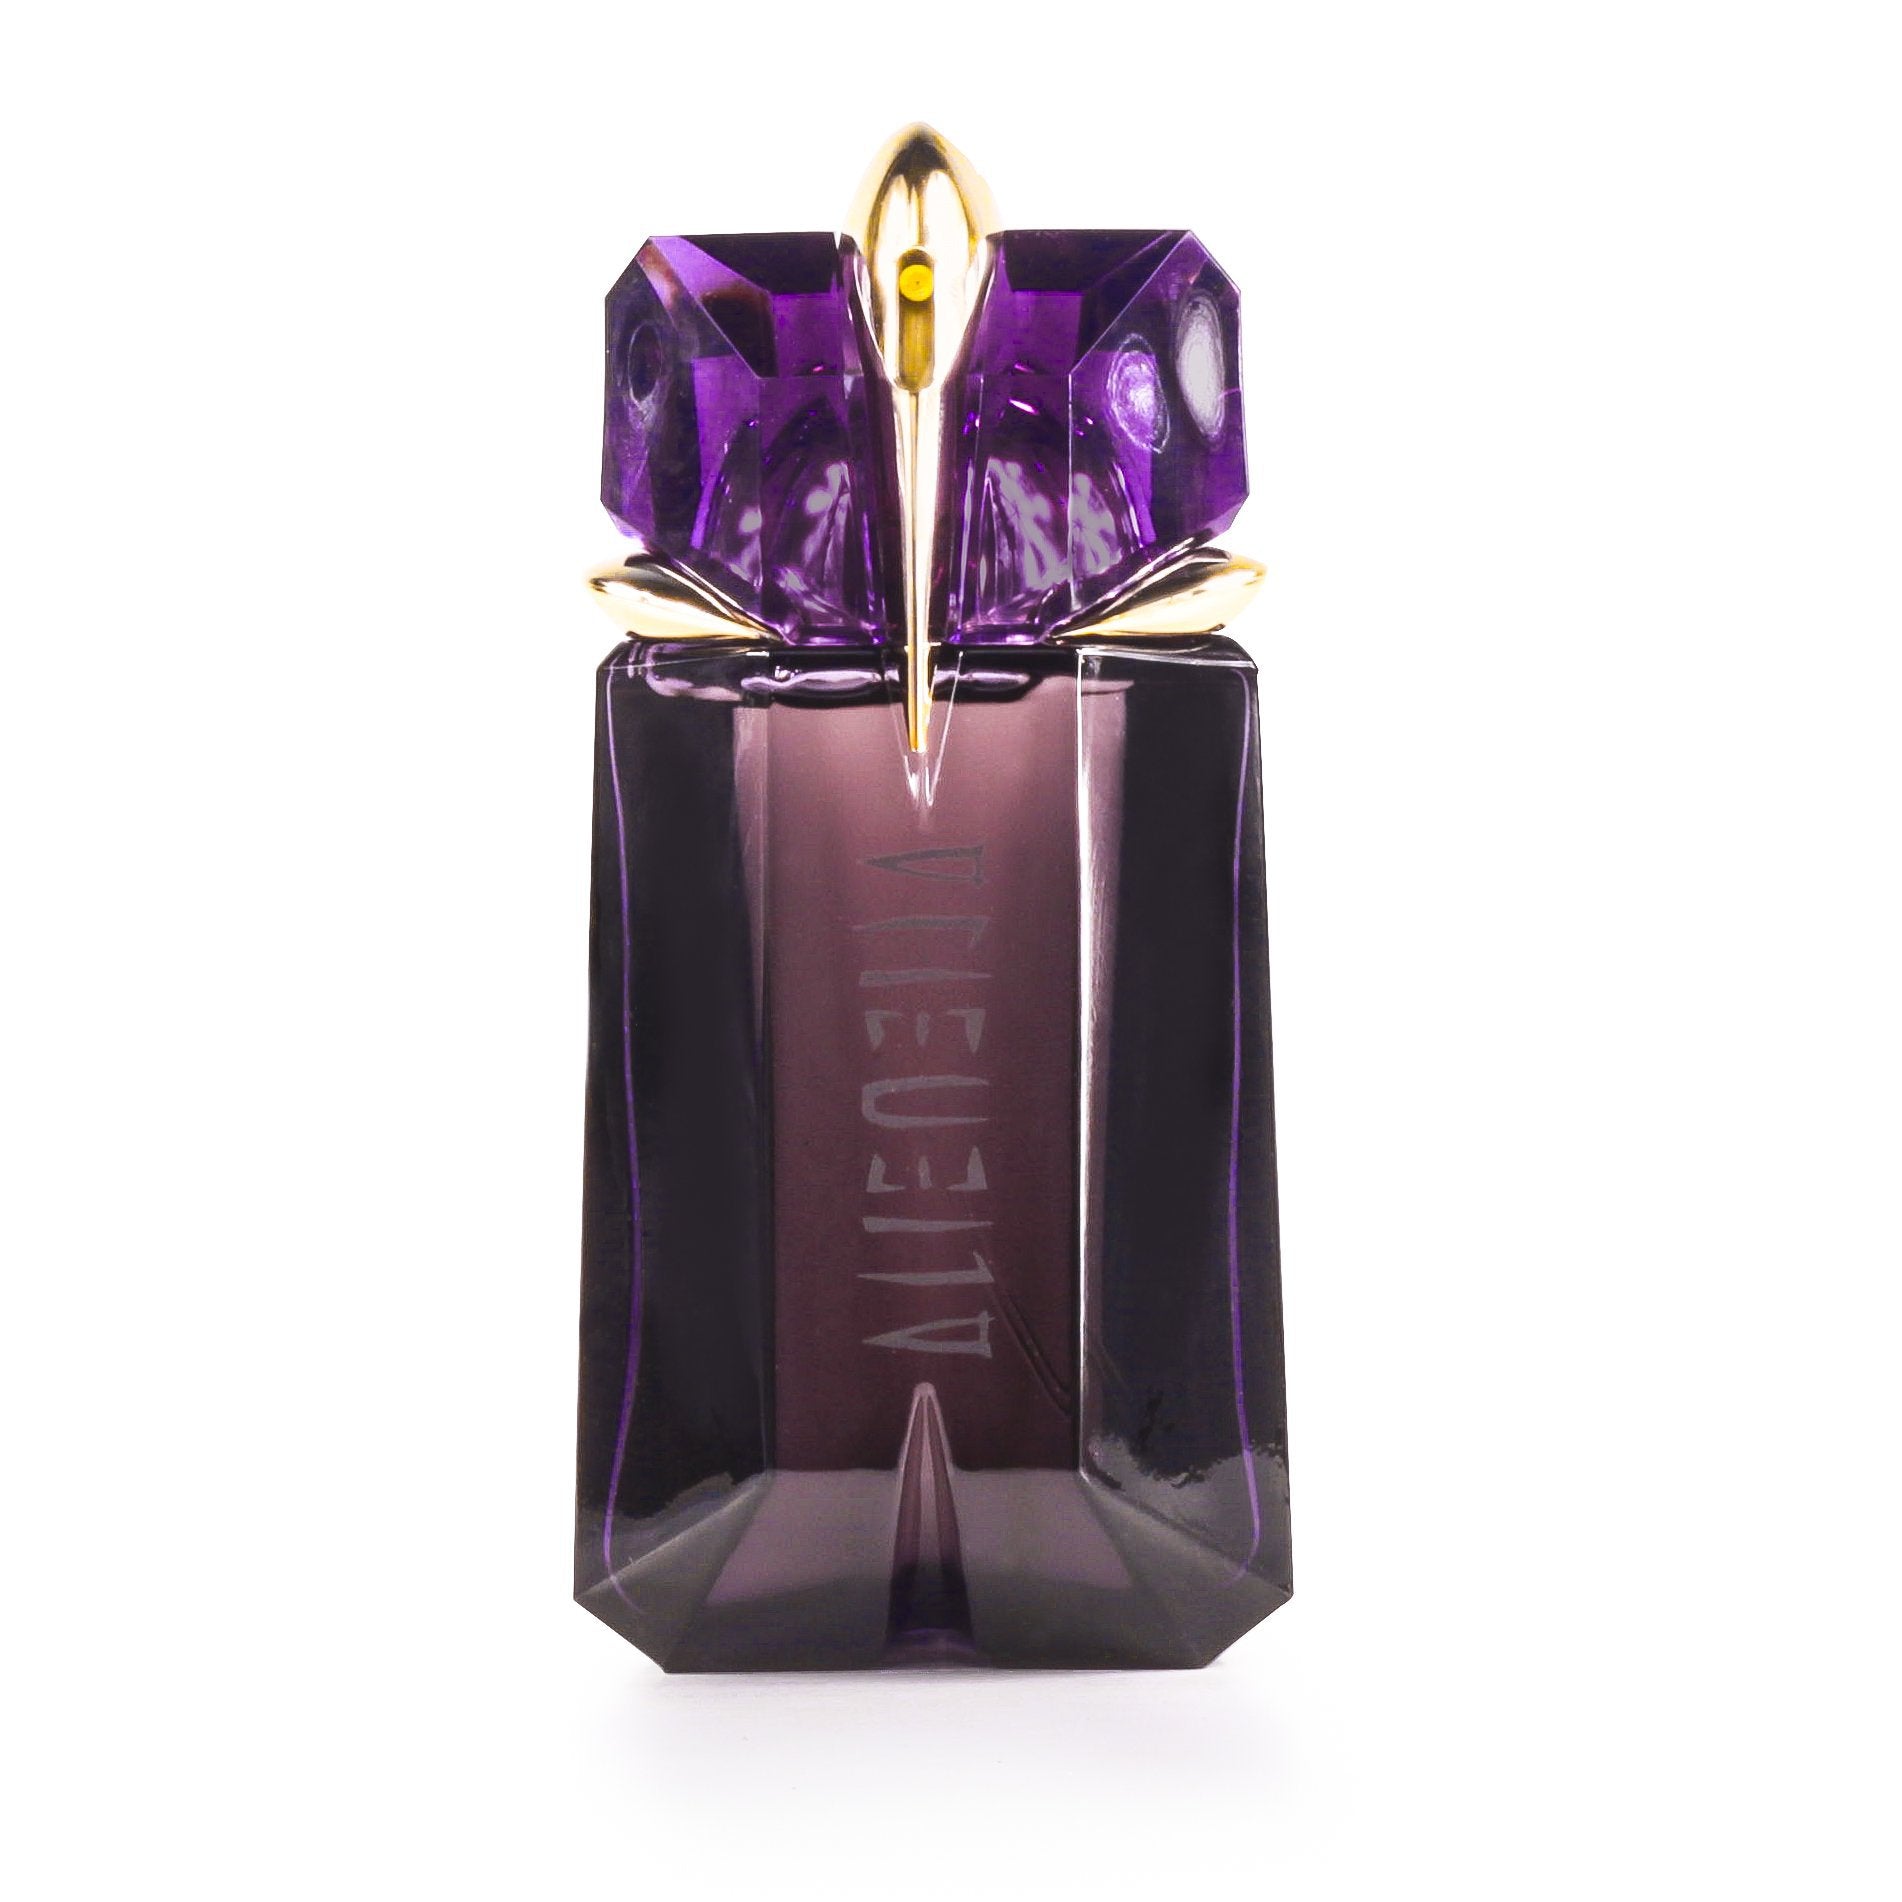 Alien Non Refillable Eau de Parfum Spray for Women by Thierry Mugler 2.0 oz. Click to open in modal